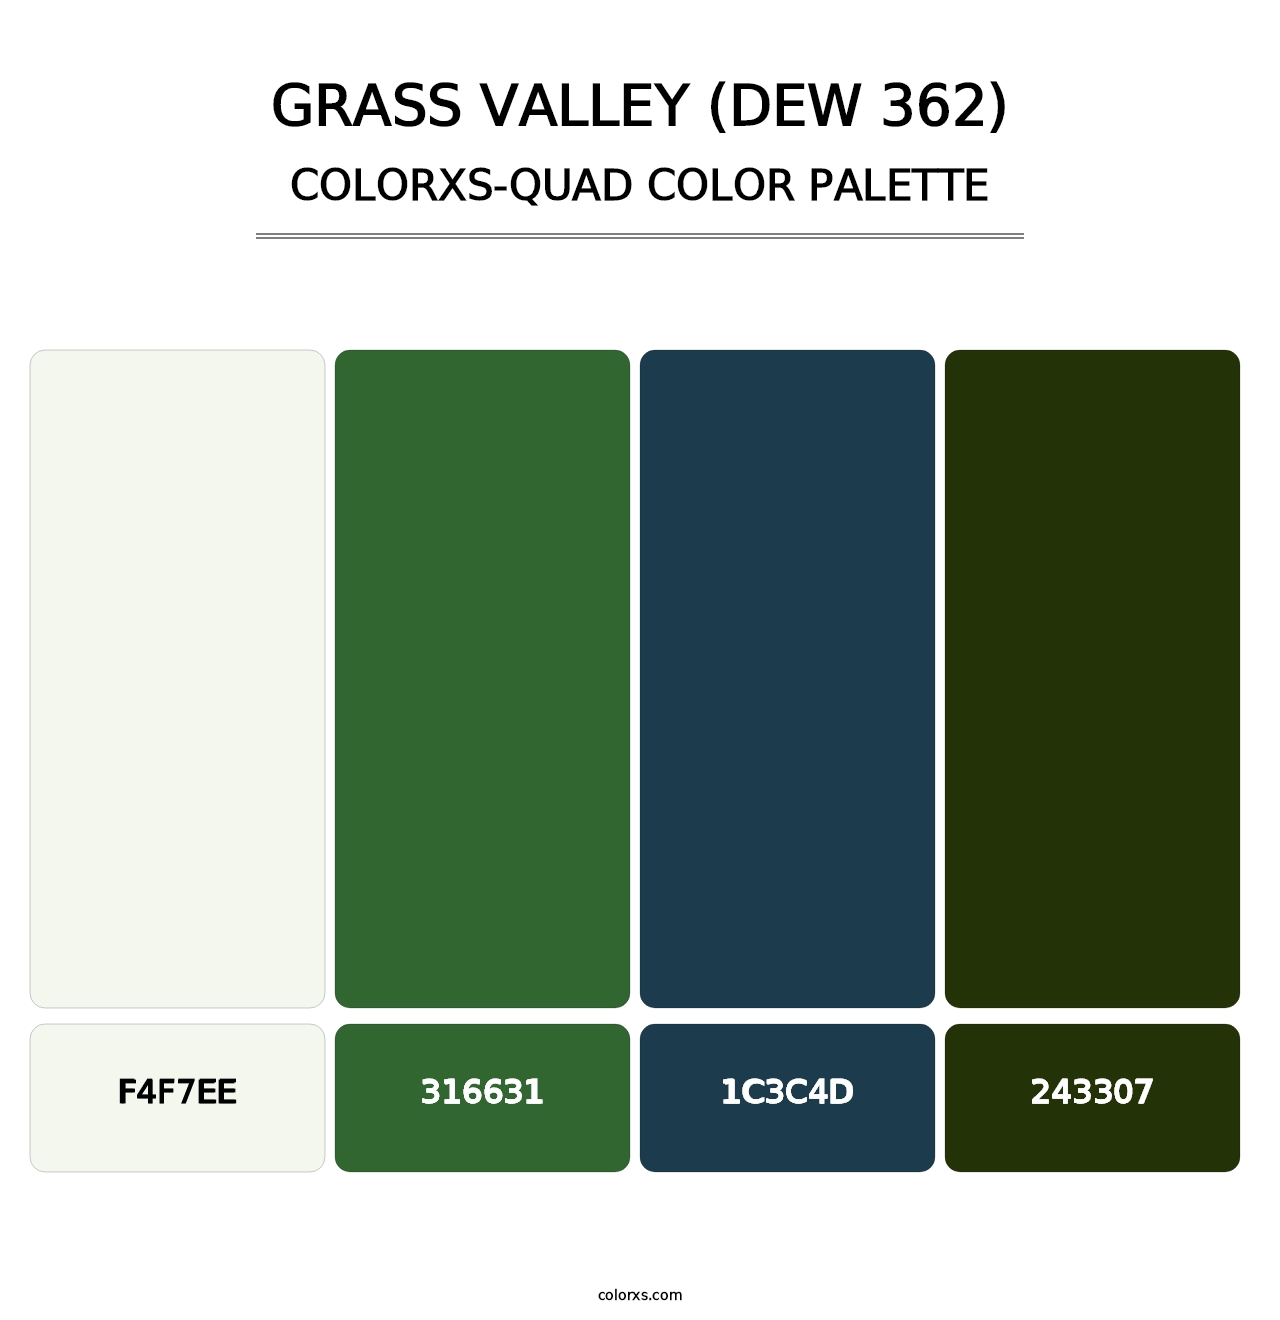 Grass Valley (DEW 362) - Colorxs Quad Palette